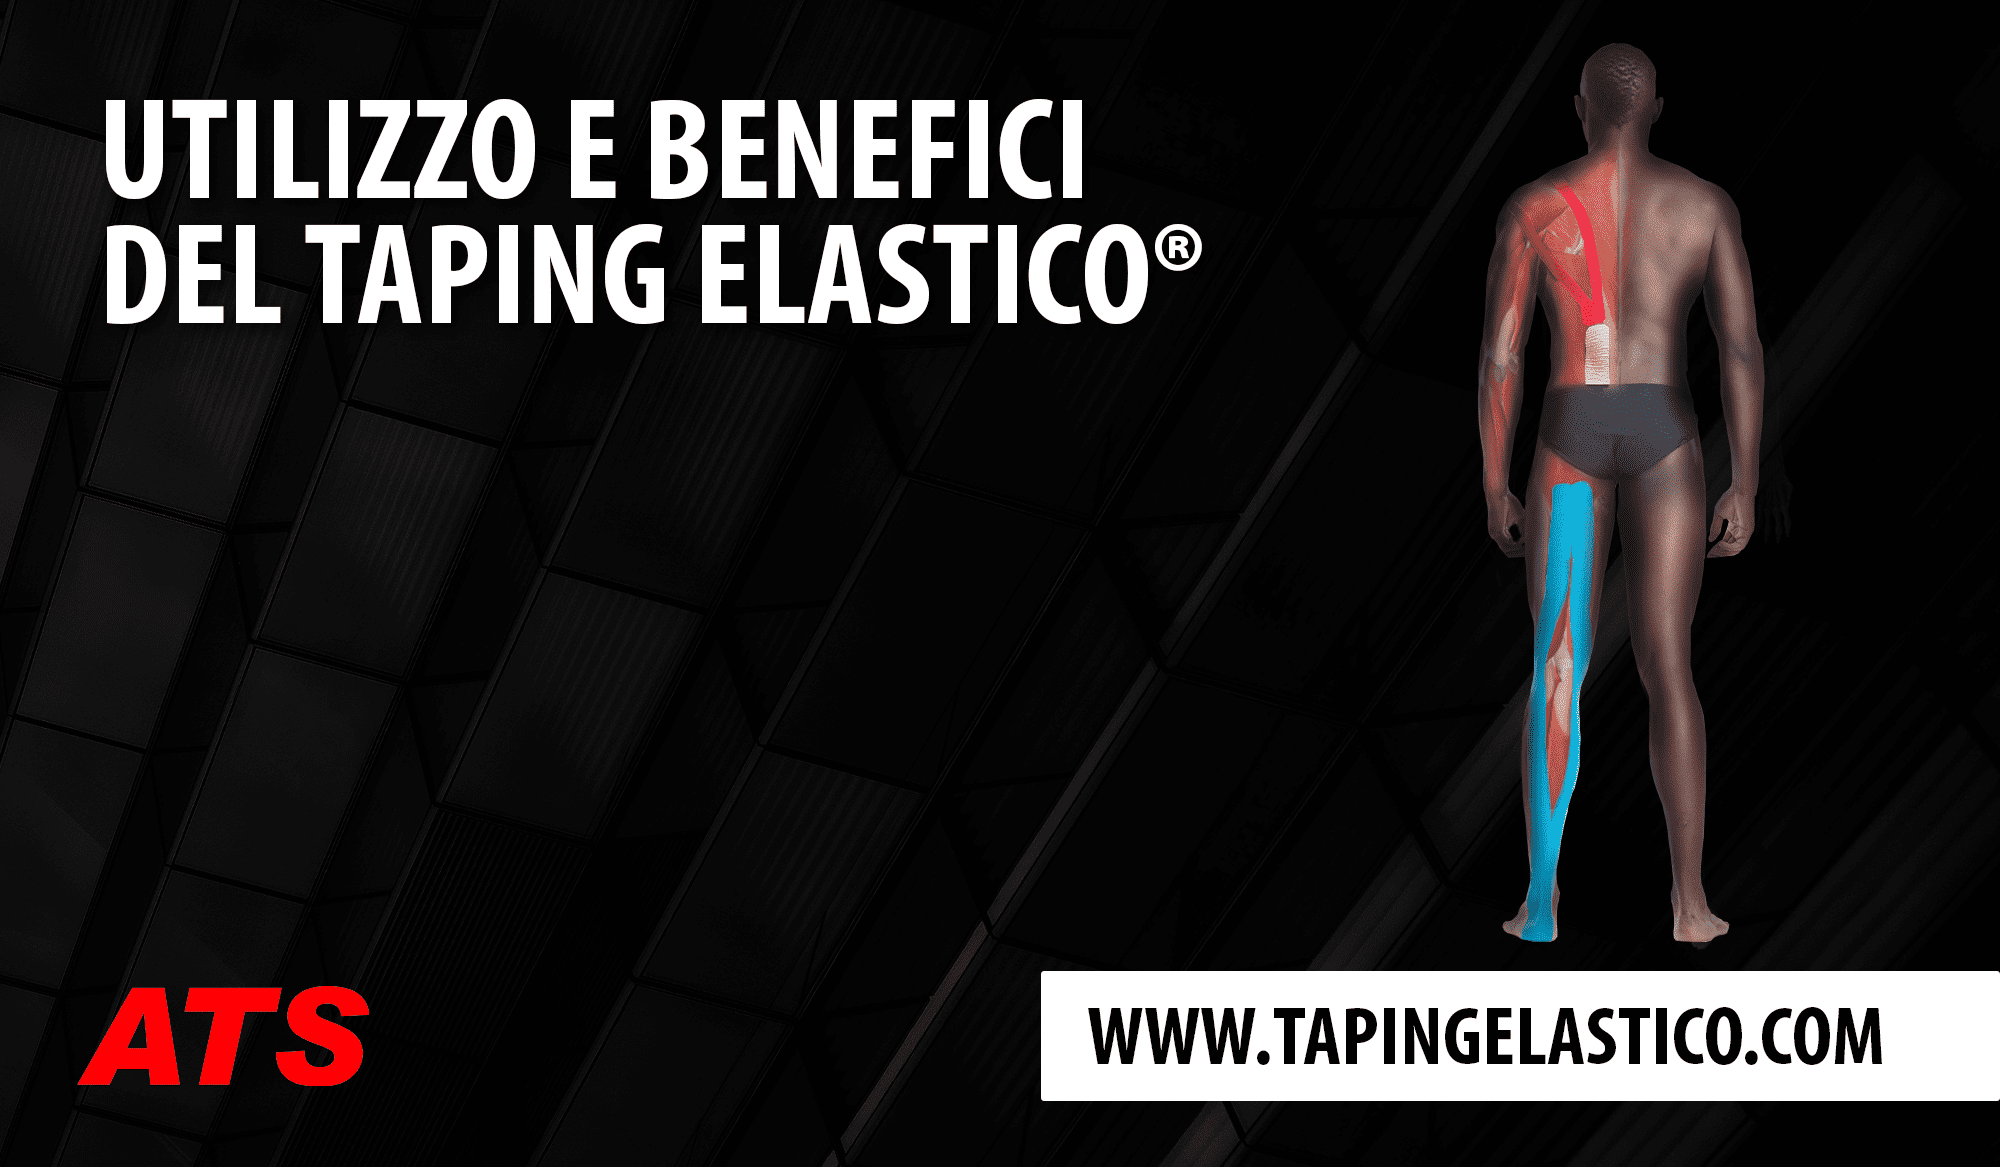 Cos’è Taping Elastico®? Una benda adesiva che produce benefici